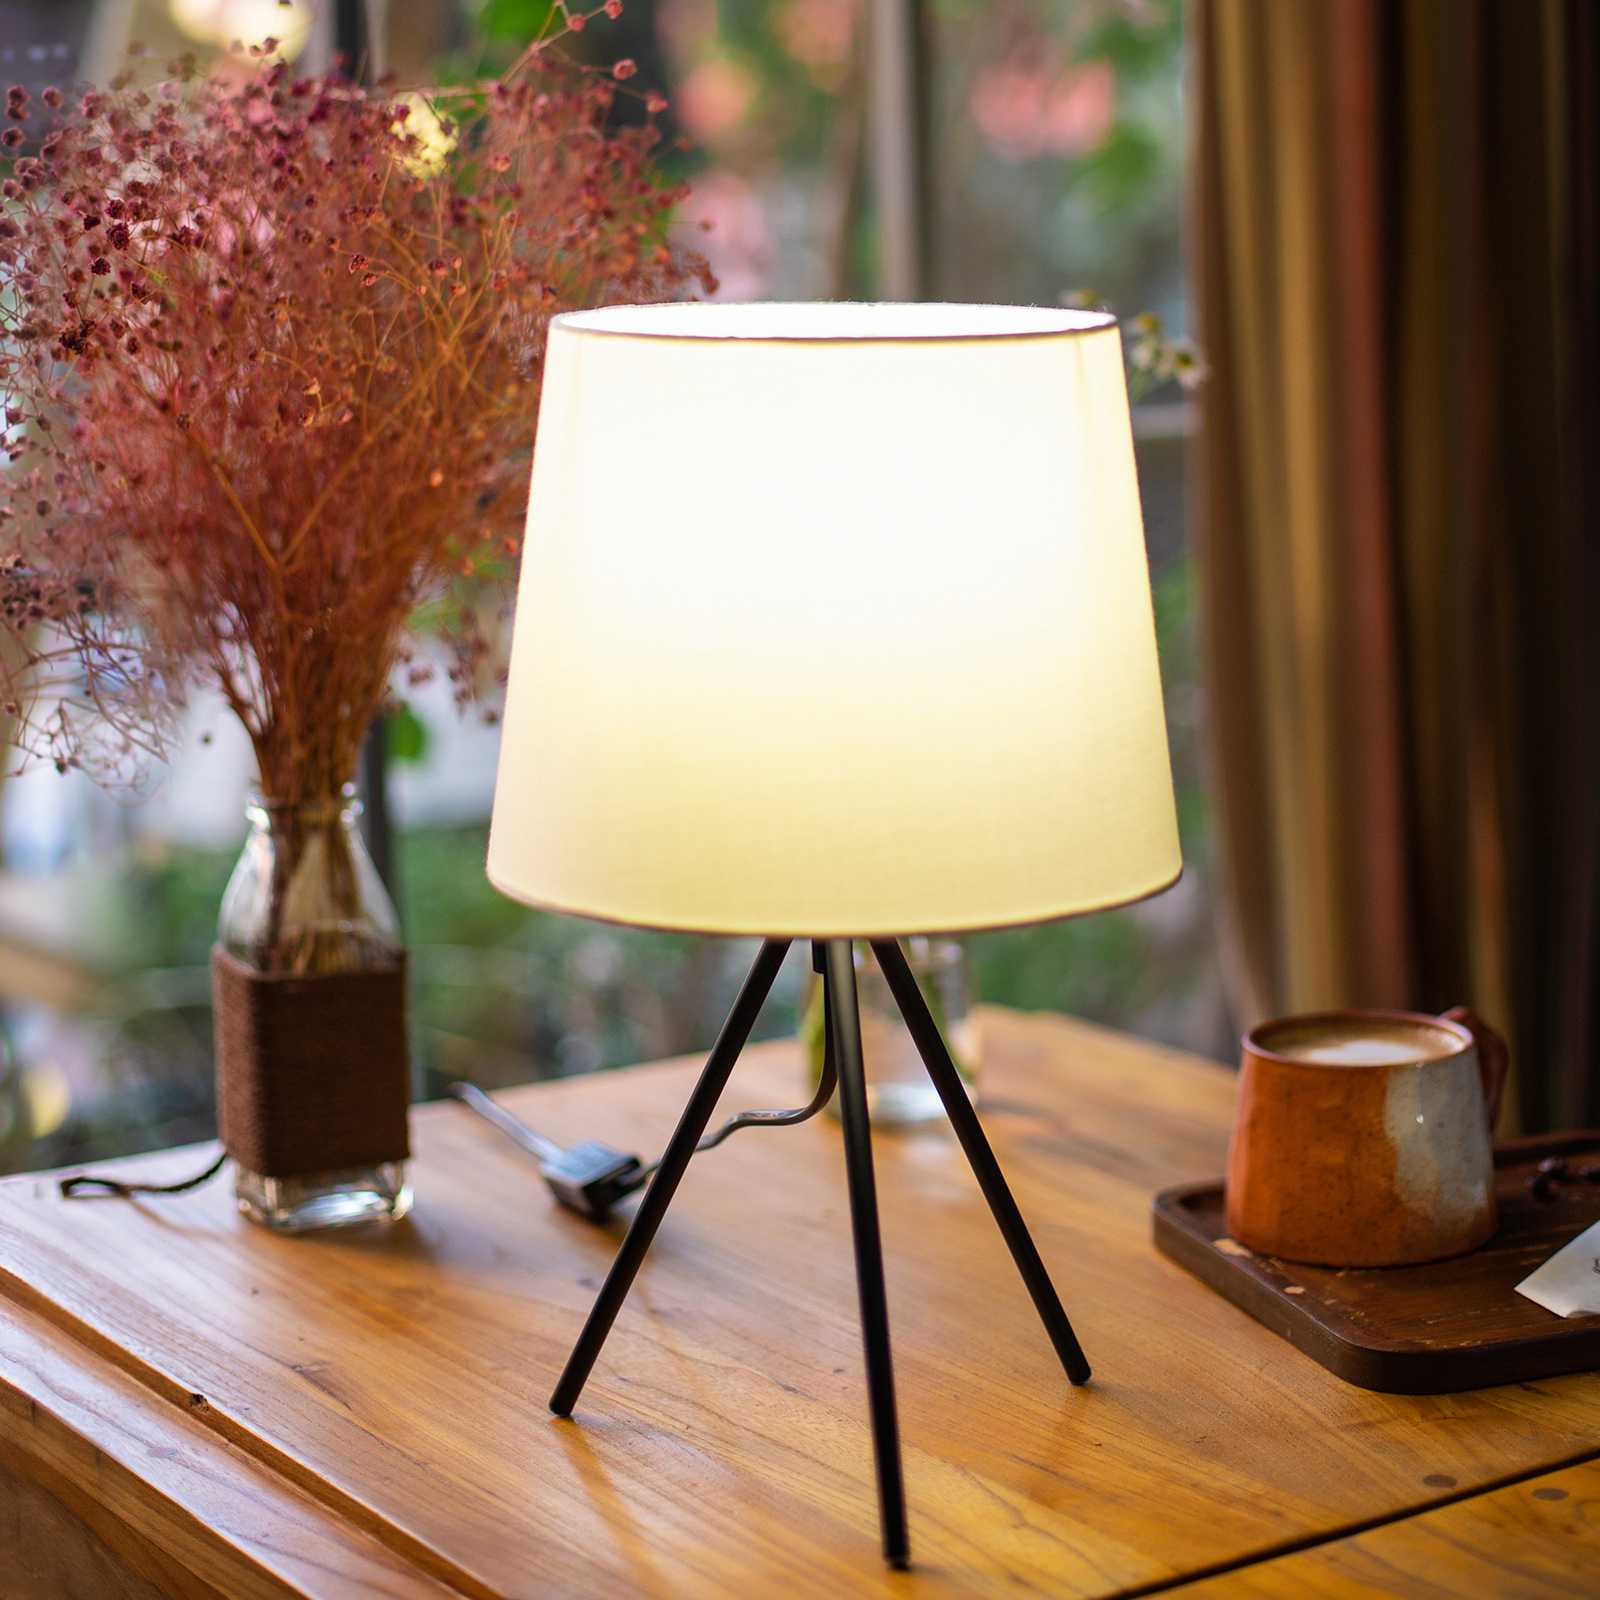 Aigostar - Lampe de Table Minimaliste, Culot fin E14, Lampe de Chevet Décorative avec une Base Métallique à 3 Pieds et Abat-jour Blanc, Idéale Décoration Chambre Salon (212568)